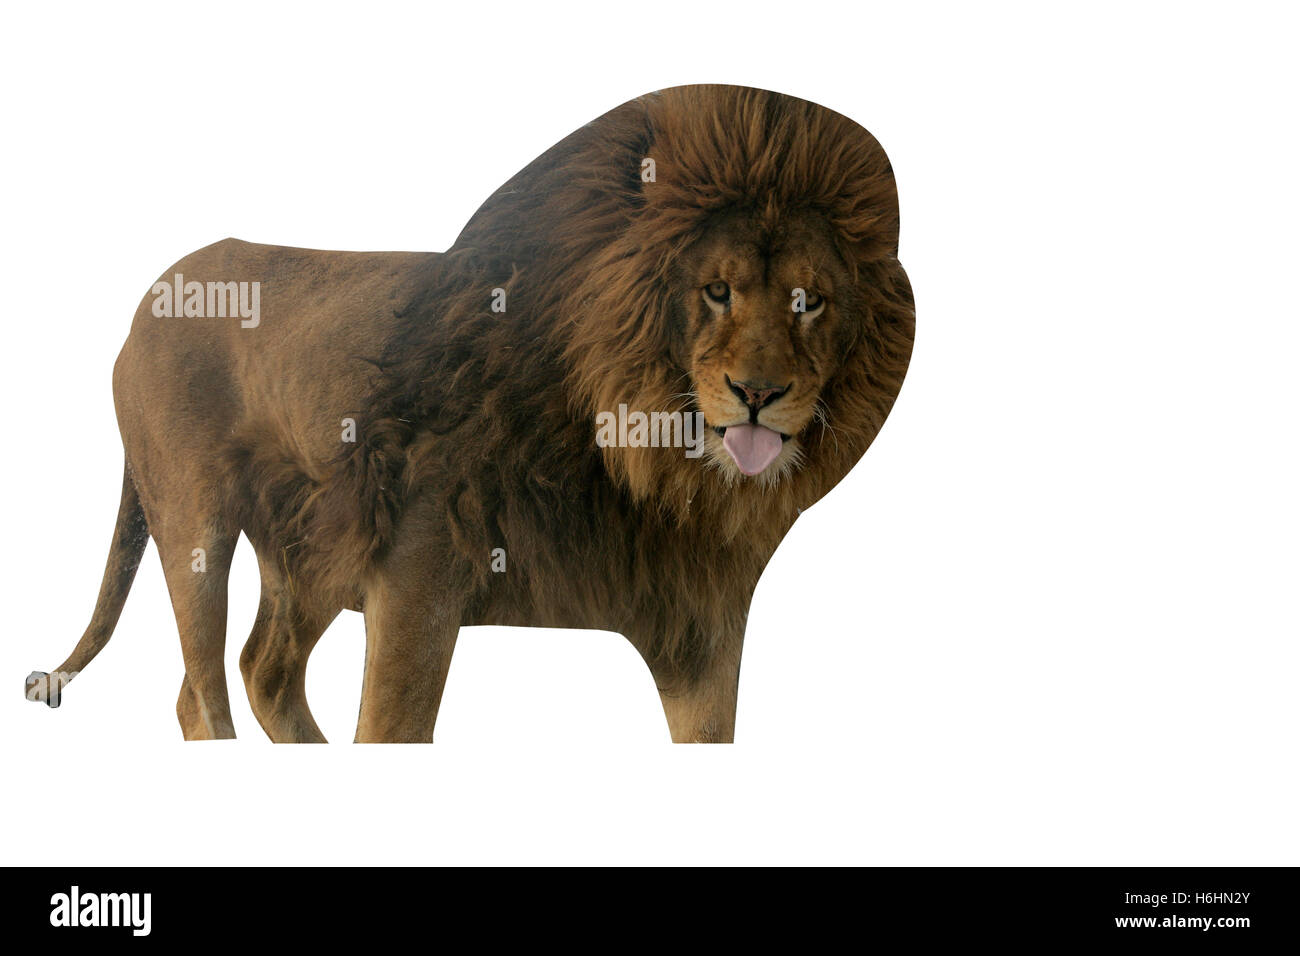 León de Barbary, Panthera leo leo, único mamífero sobre el césped Foto de stock